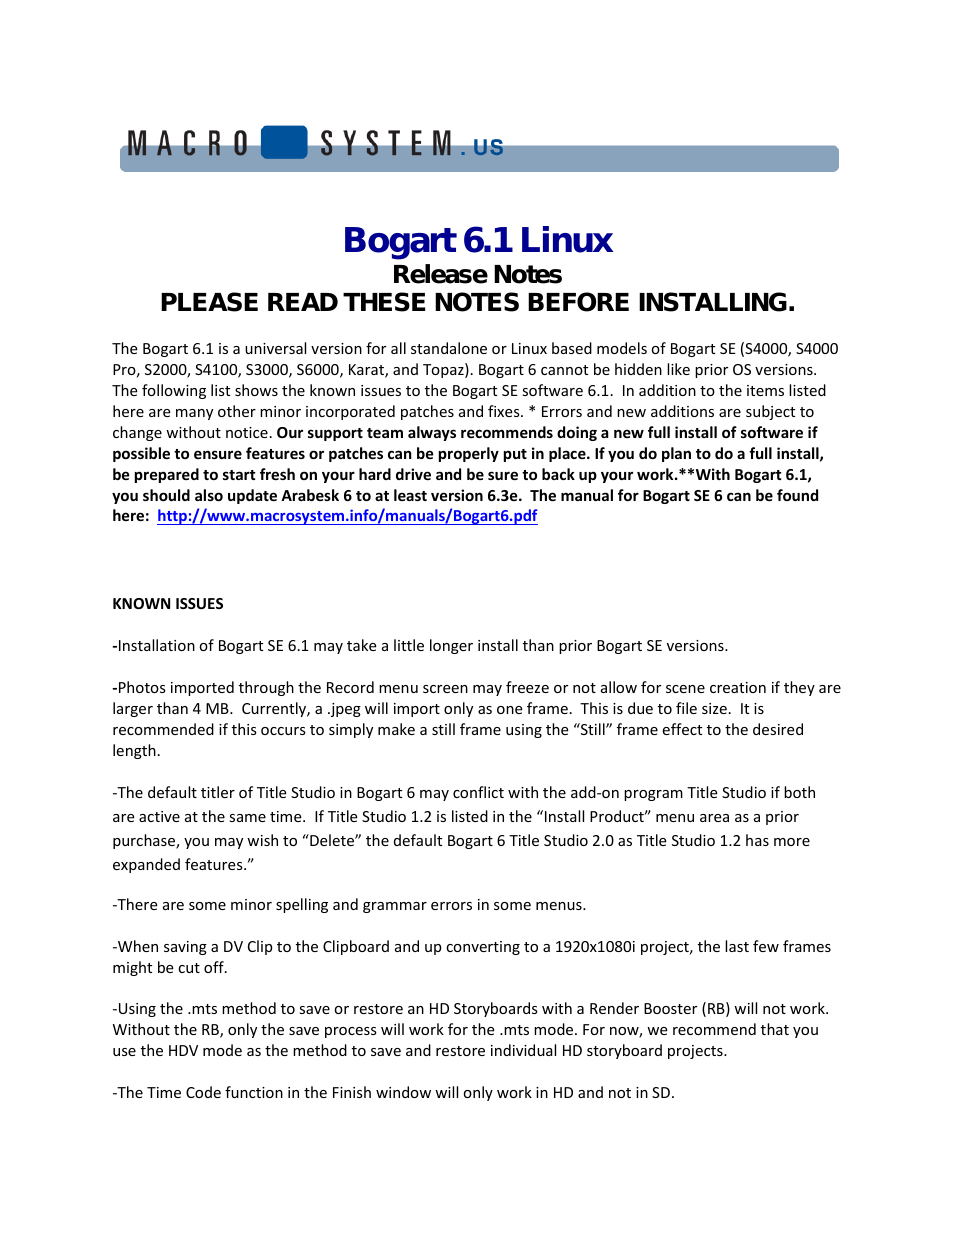 Bogart 6.1 Linux Release Notes